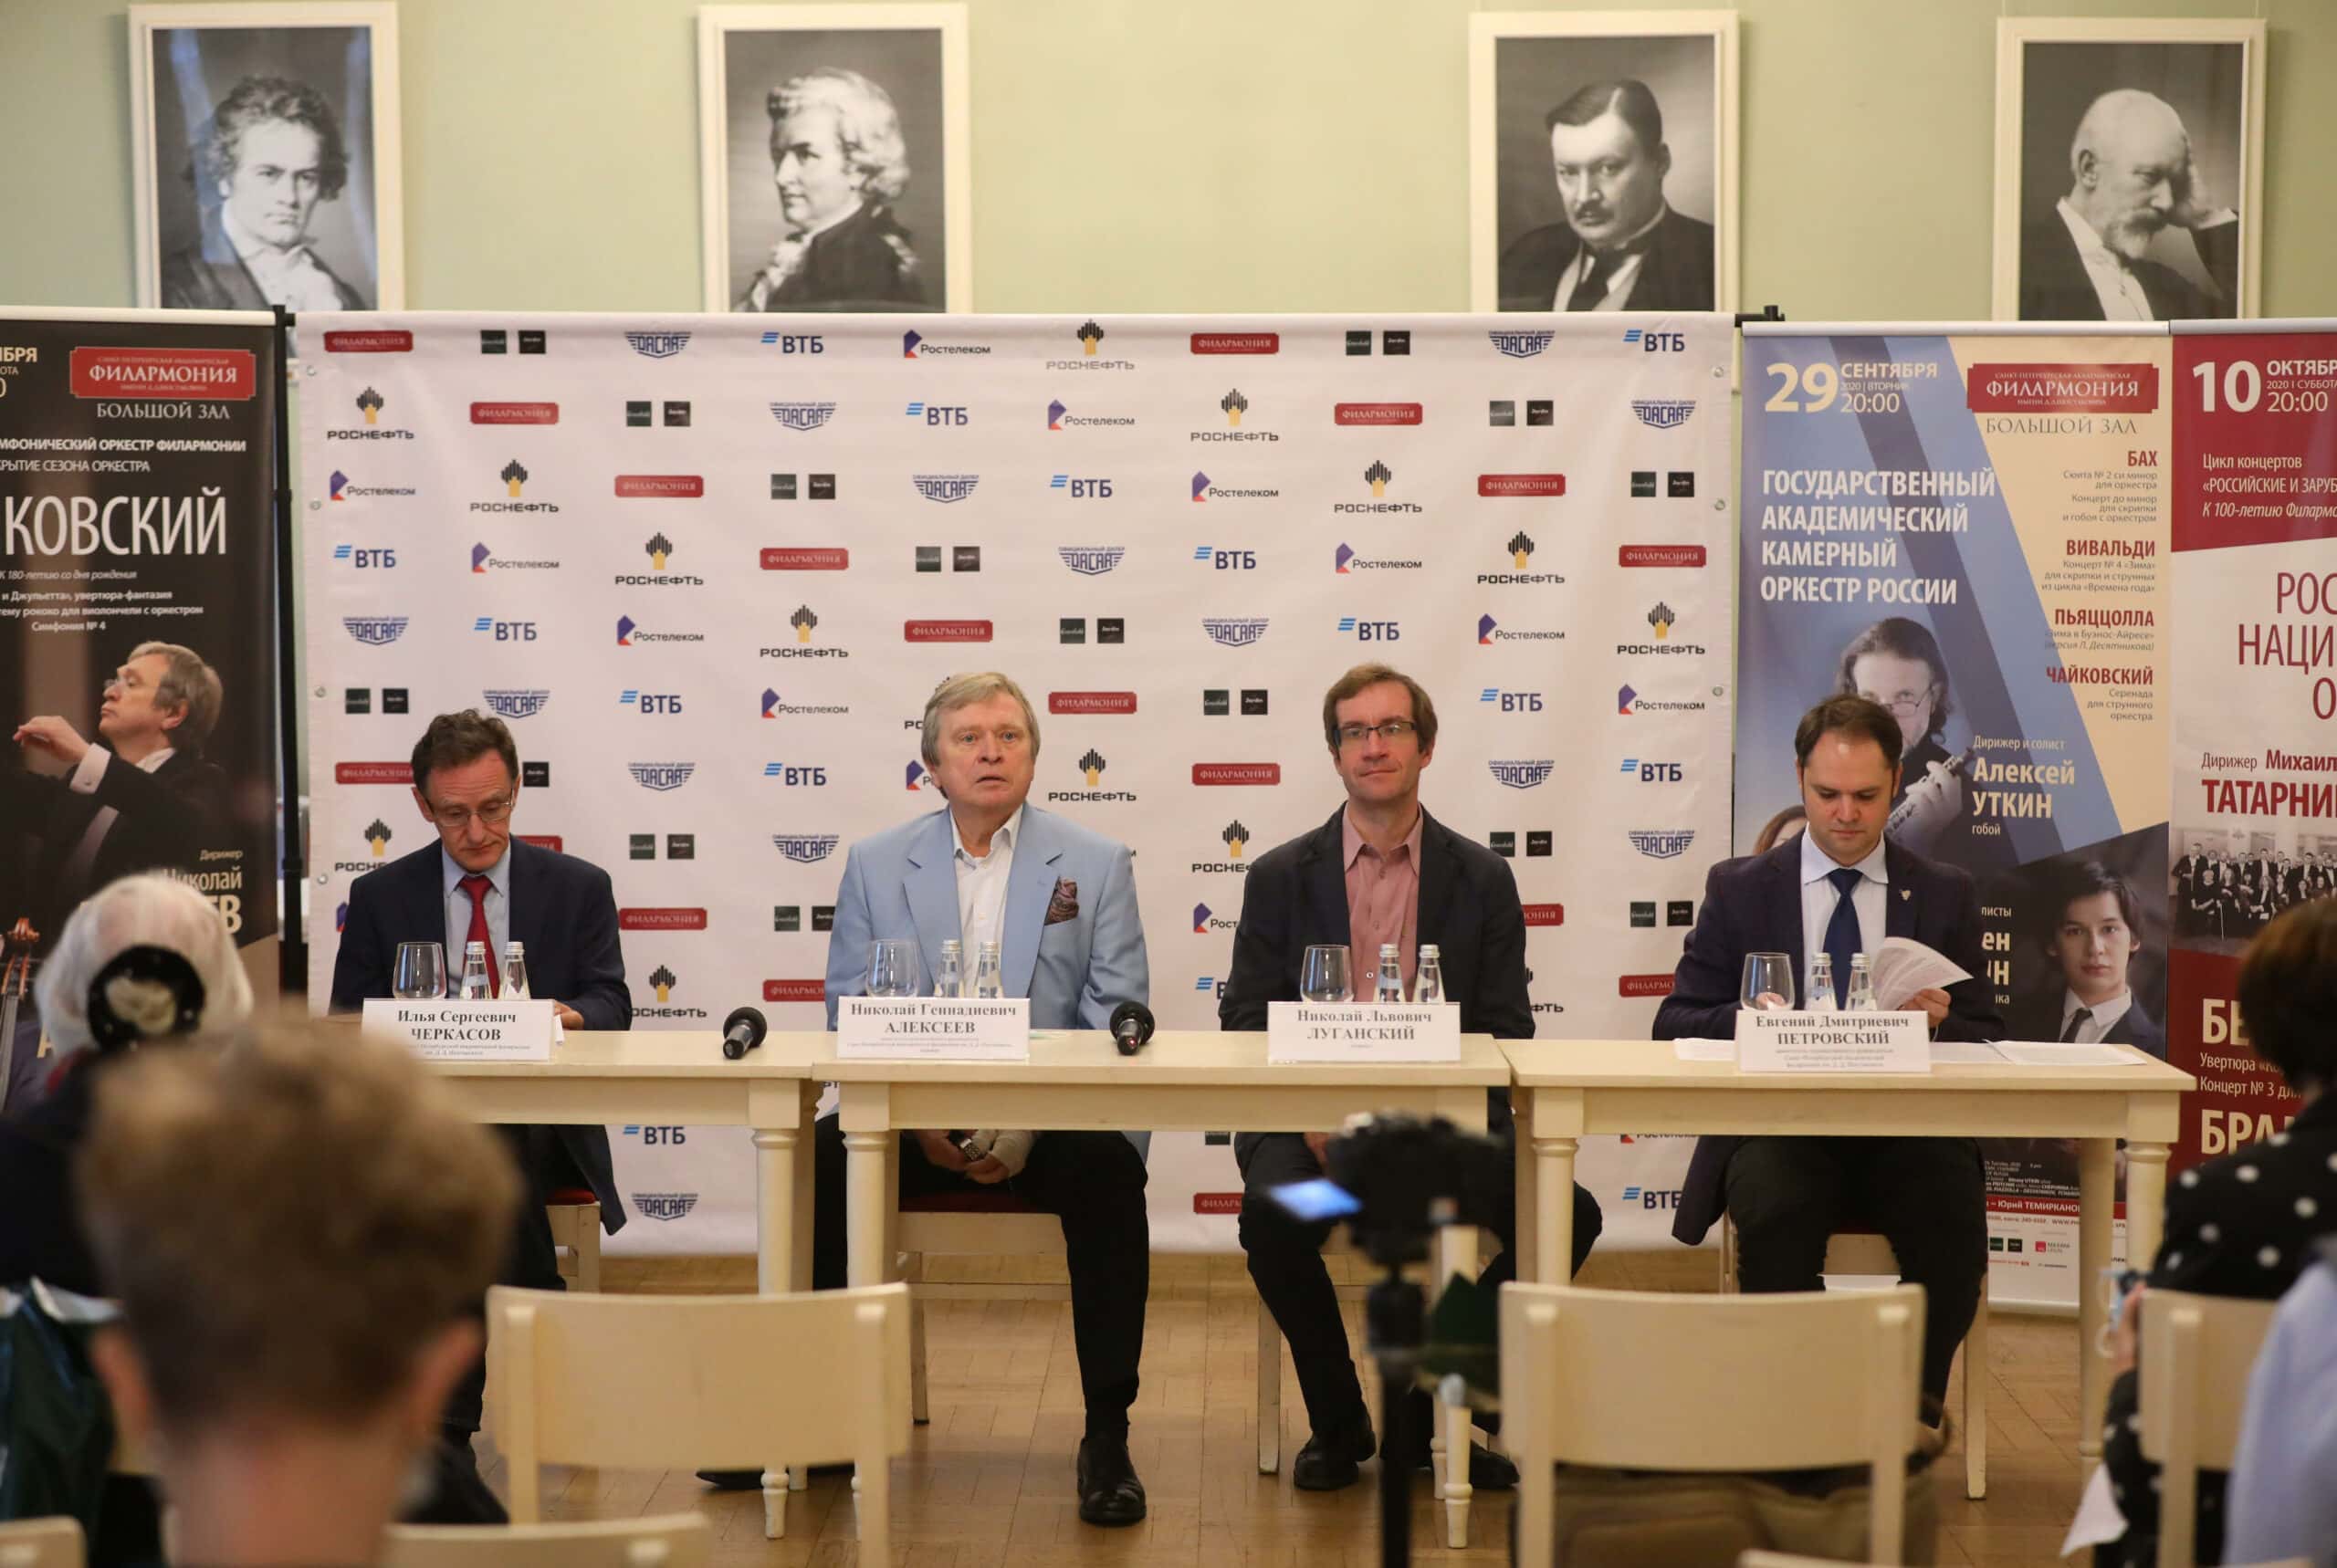  فیلارمونیک سن پترزبورگ کنفرانس مطبوعاتی اختصاص داده شده به افتتاحیه فصل را برگزار کرد 